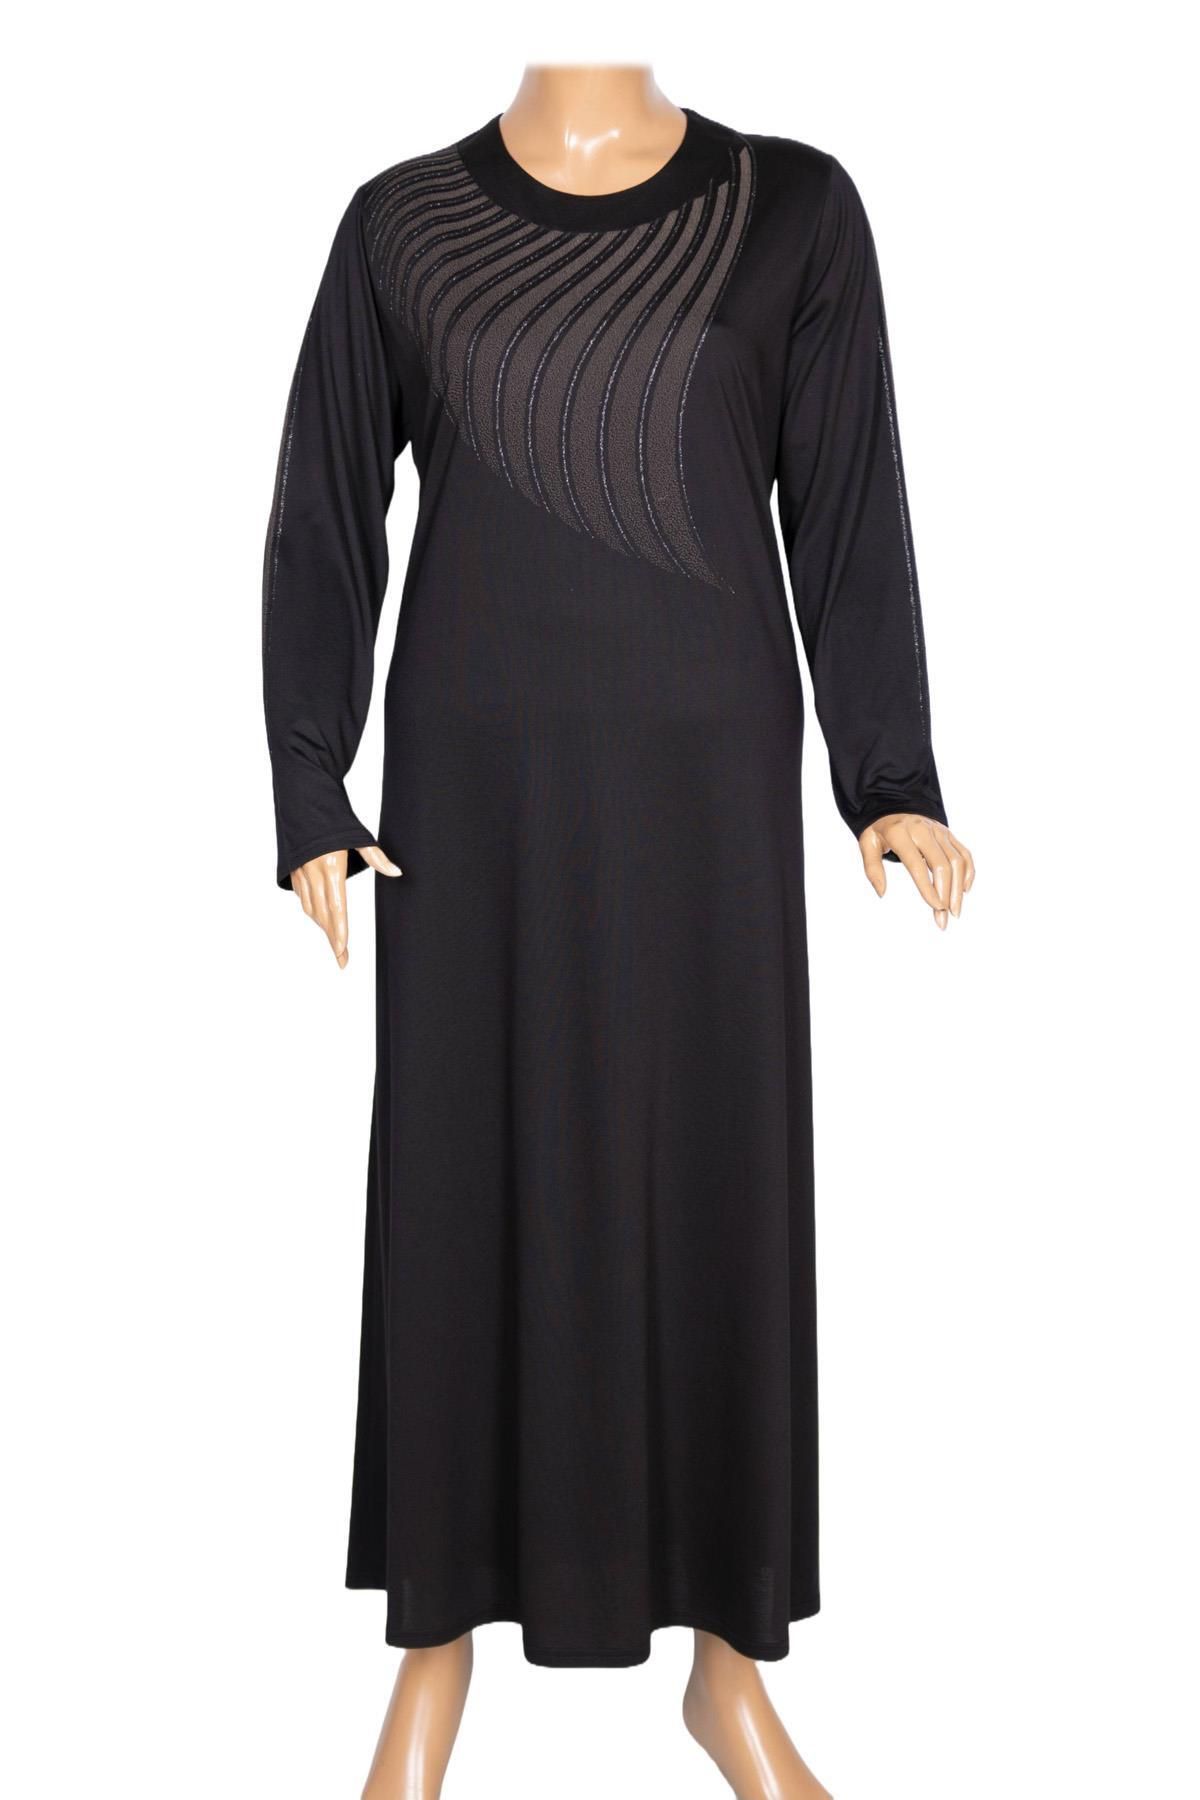 HESNA Kadın Belde Büyük Beden Boydan Baskılı Siyah Elbise